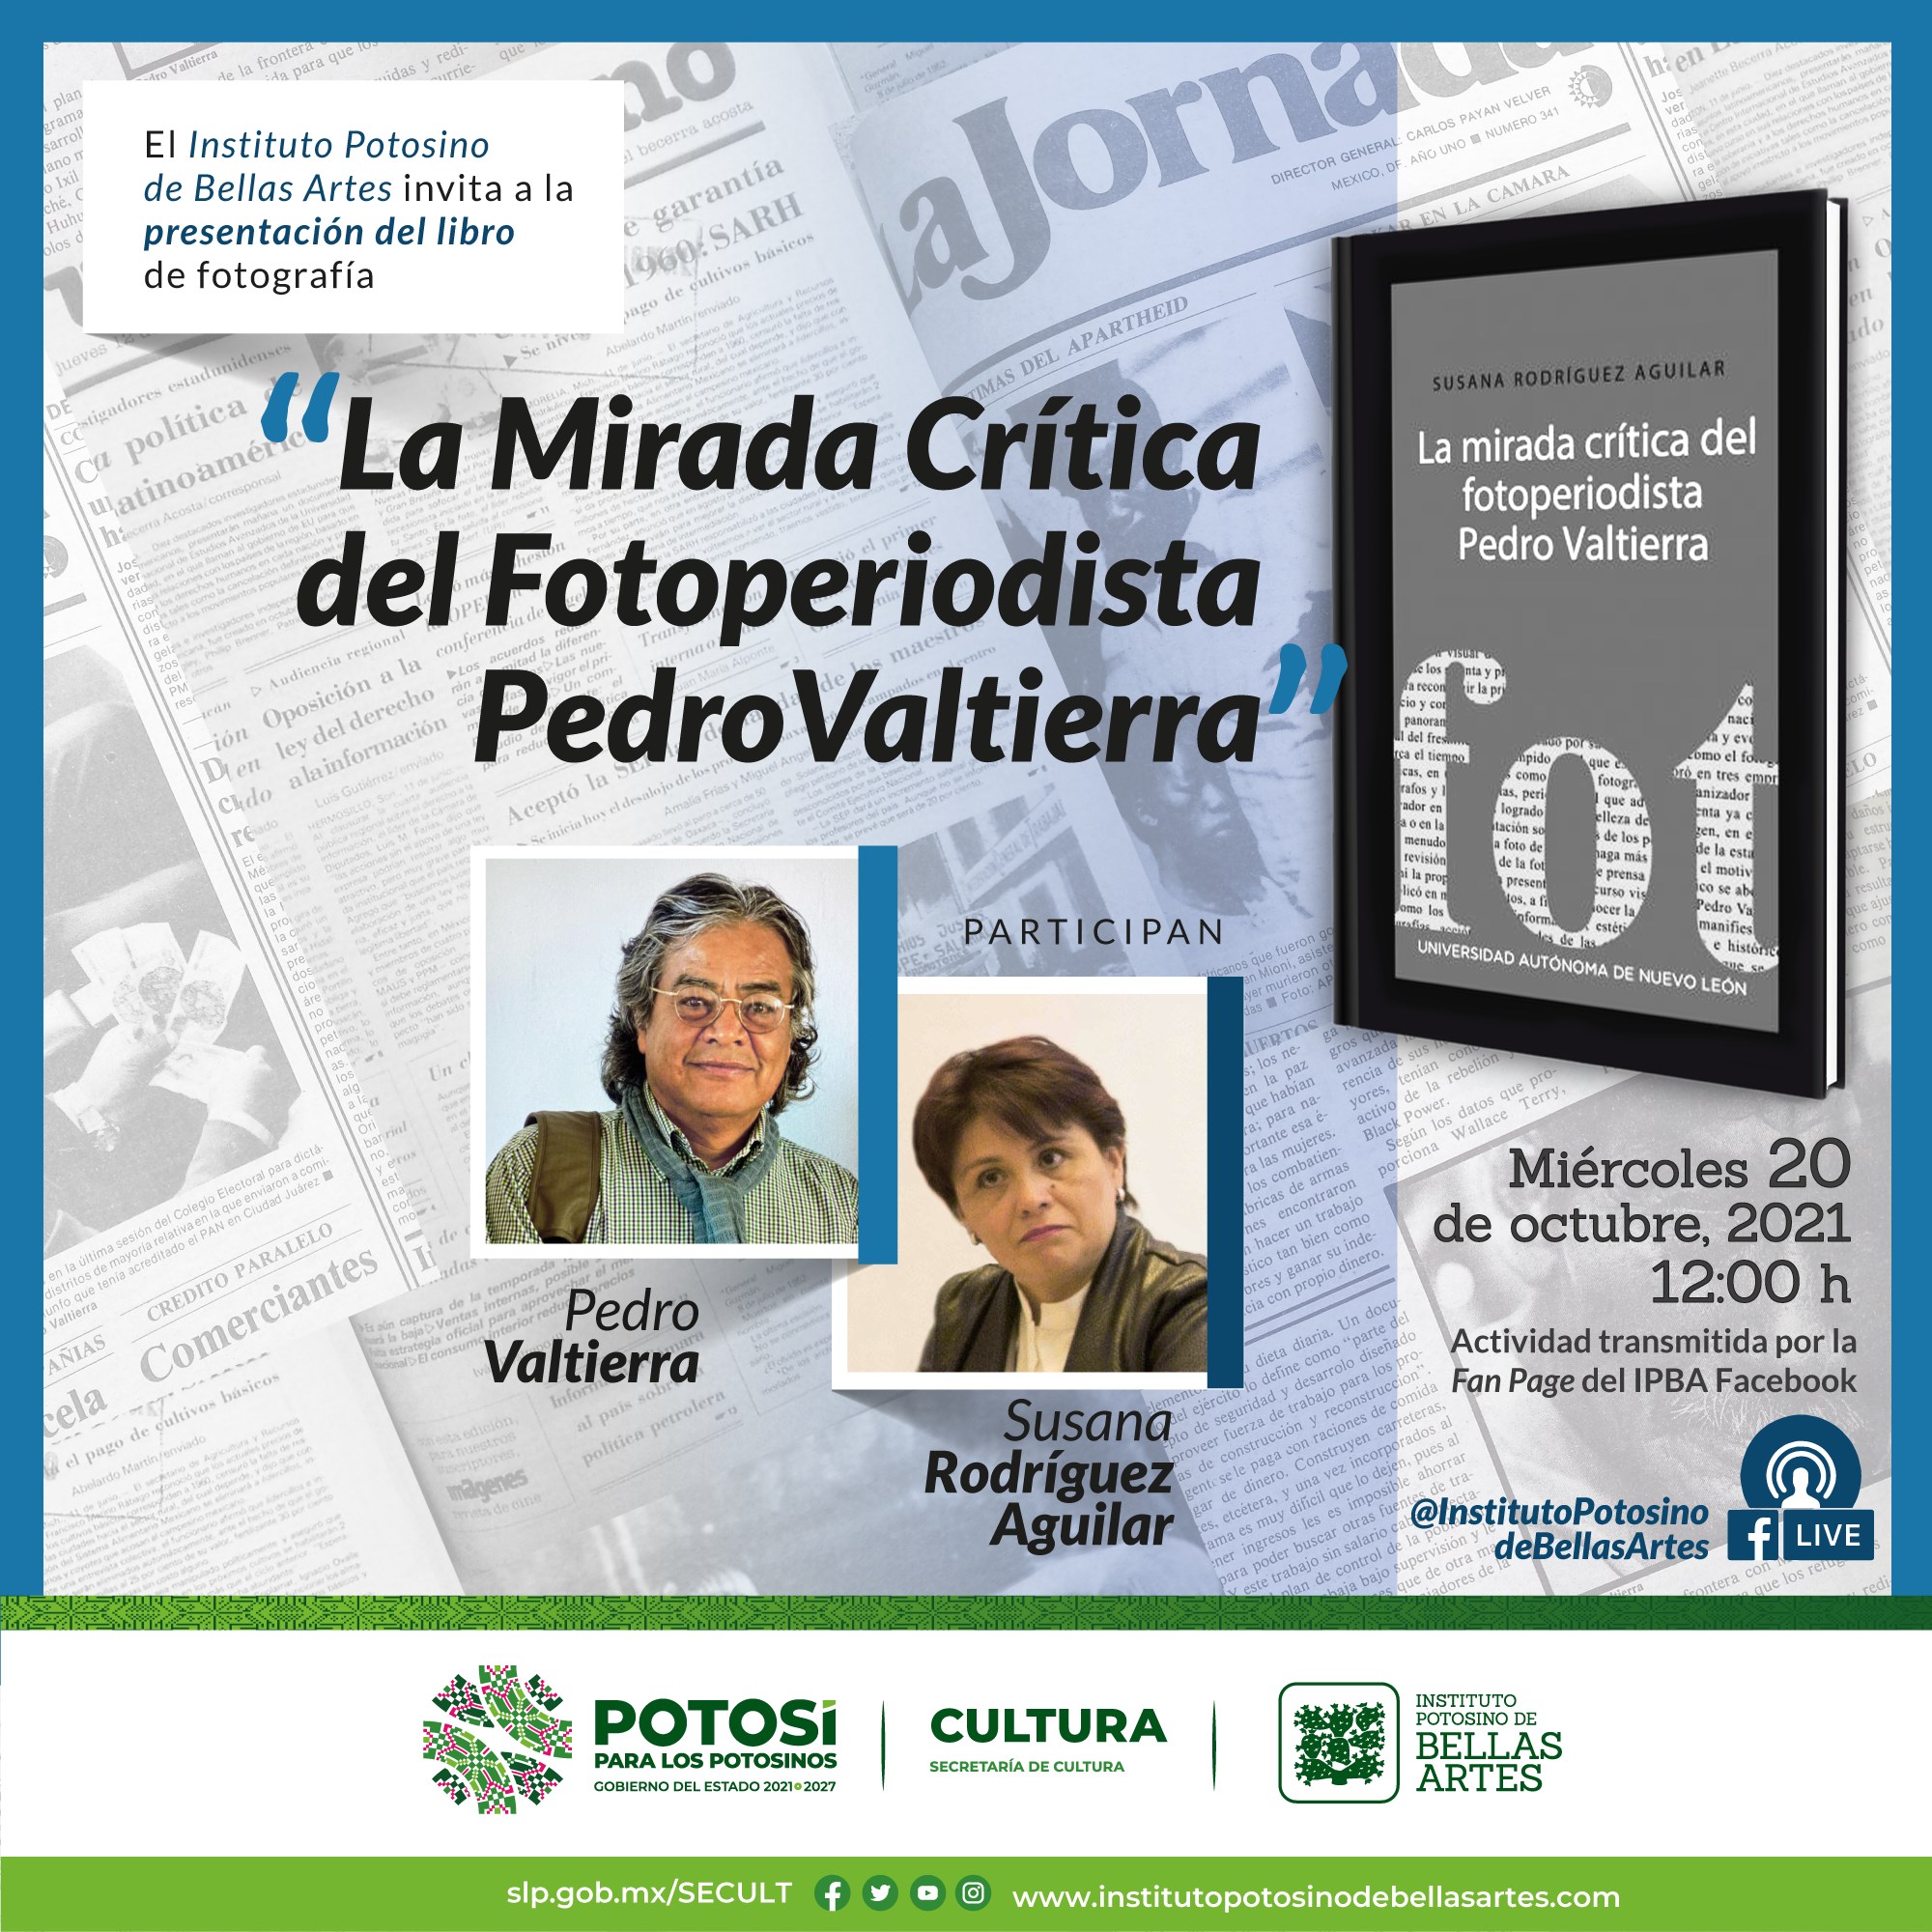 La mirada crítica de Pedro Valtierra en el IPBA